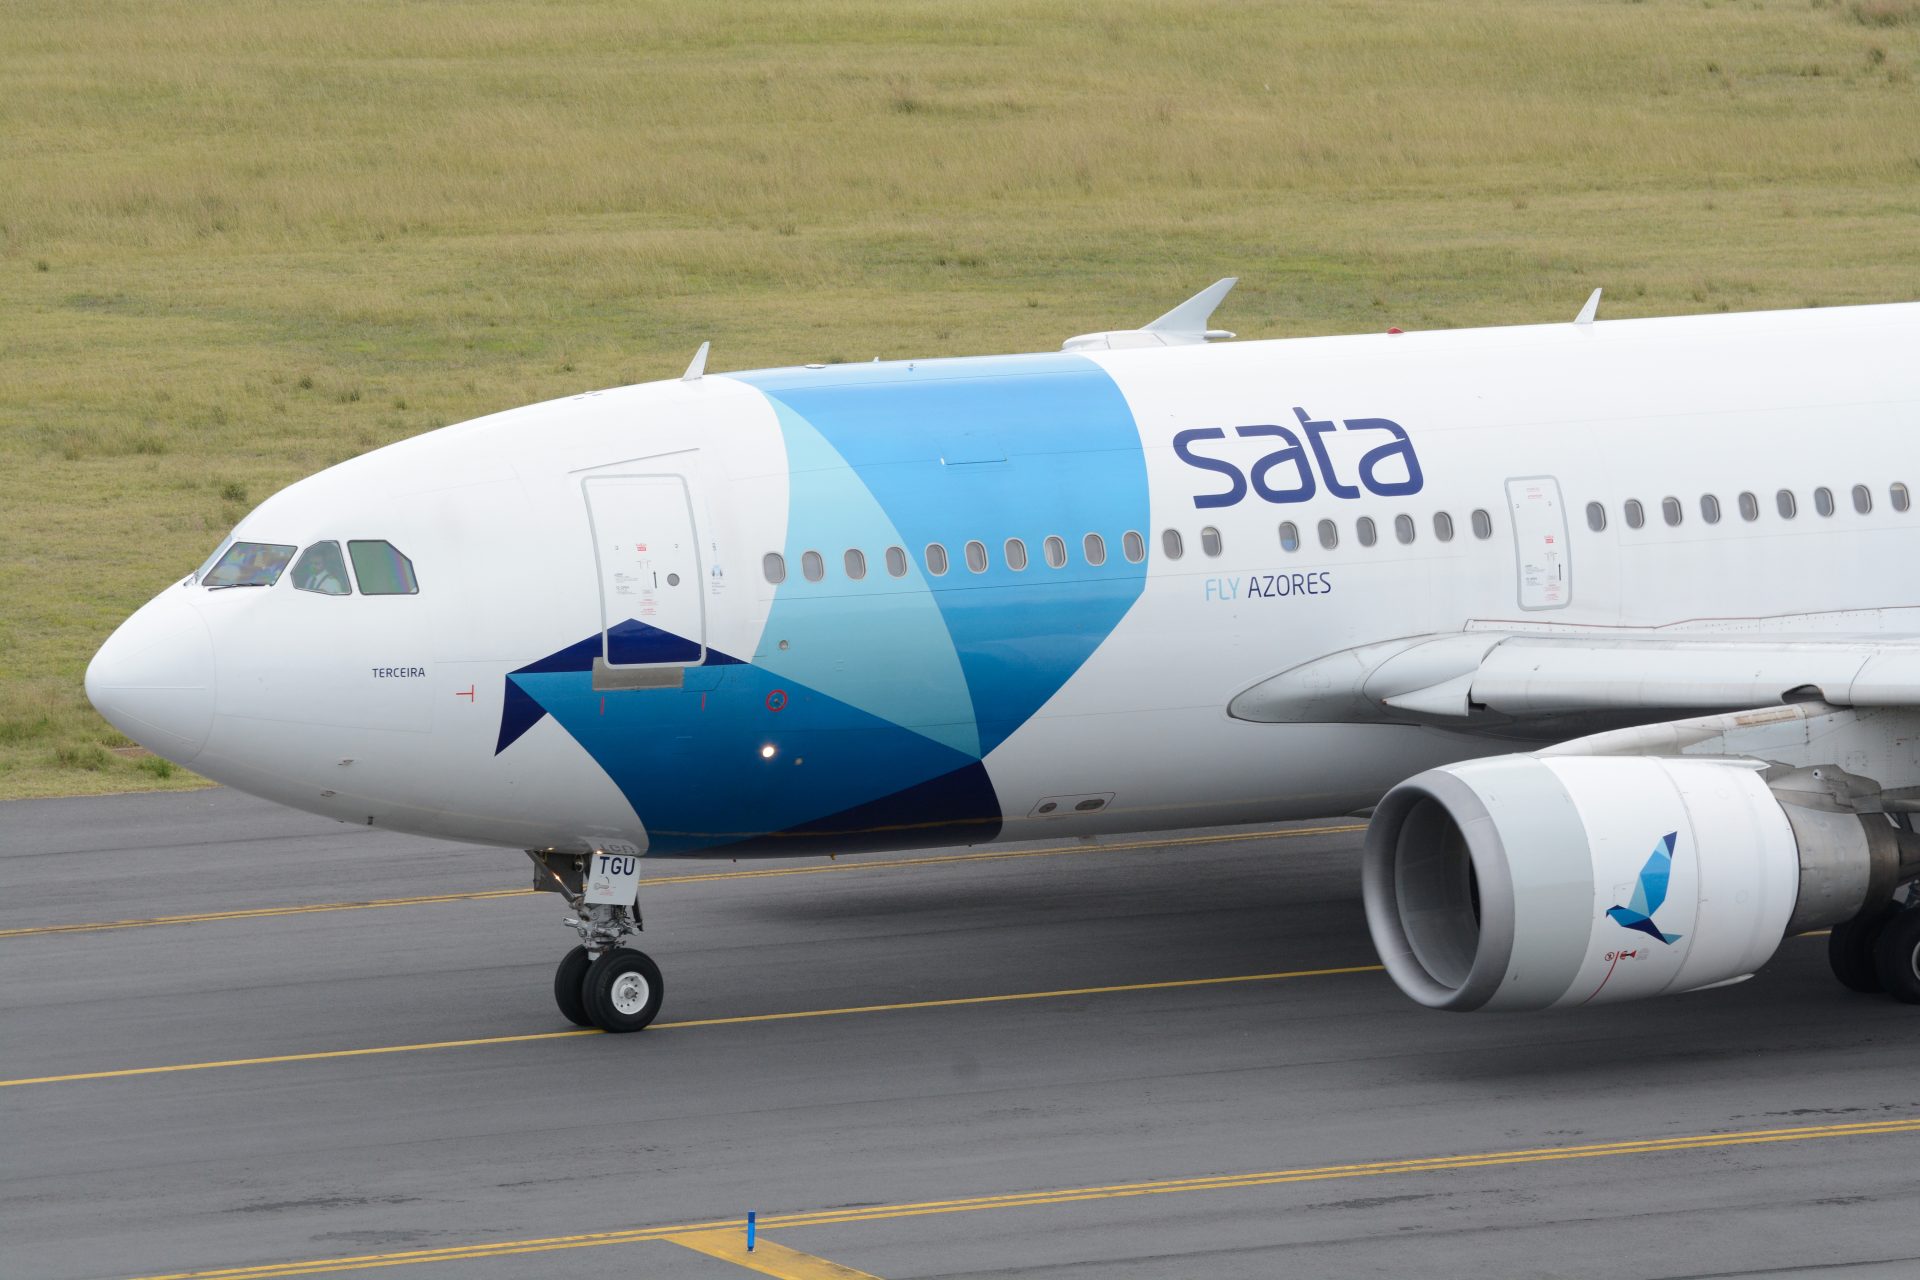 Pilotos aplaudem recomendação da SATA para anular privatização da Azores Airlines